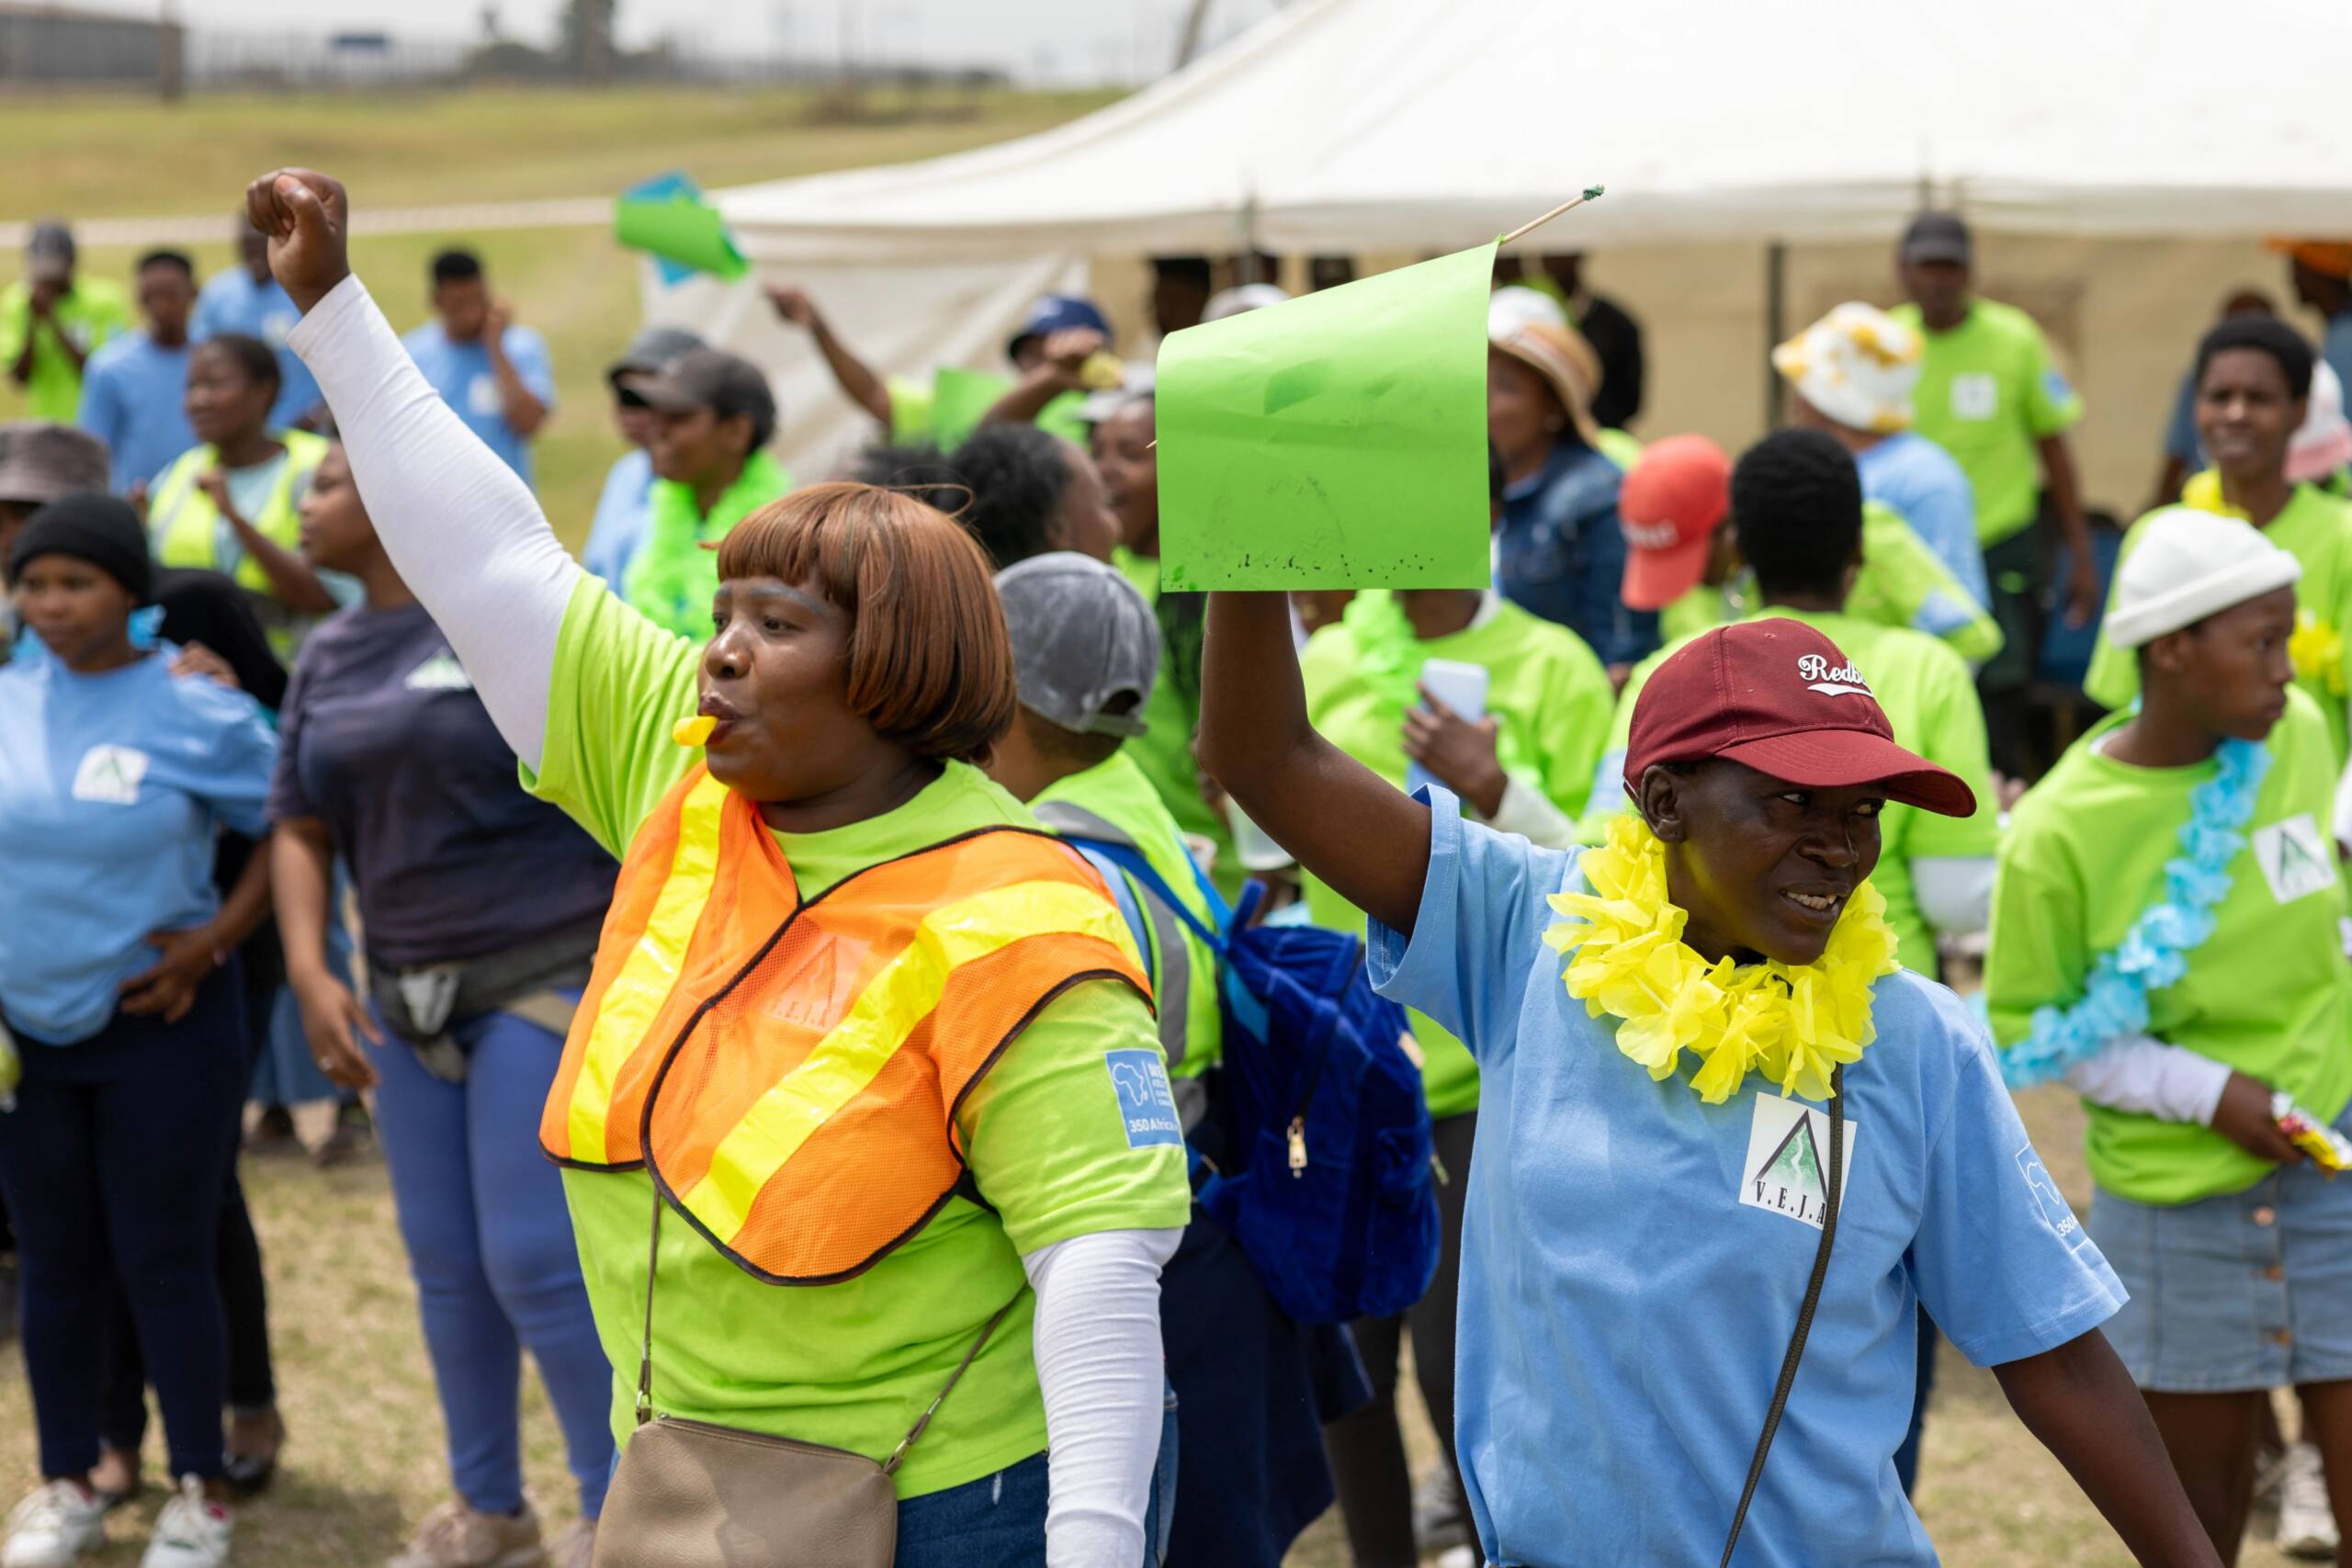 Salsolburg, Afrika Selatan, 3 November: para aktivis menyelenggarakan parade dan festival di luar SASOL, pembangkit listrik tenaga gas terbesar se-Afrika, untuk mengungkap beragam dampak energi kotor dan menuntut lebih banyak investasi pada energi terbarukan. Kredit foto: Oliver Karstel/Sound Idea